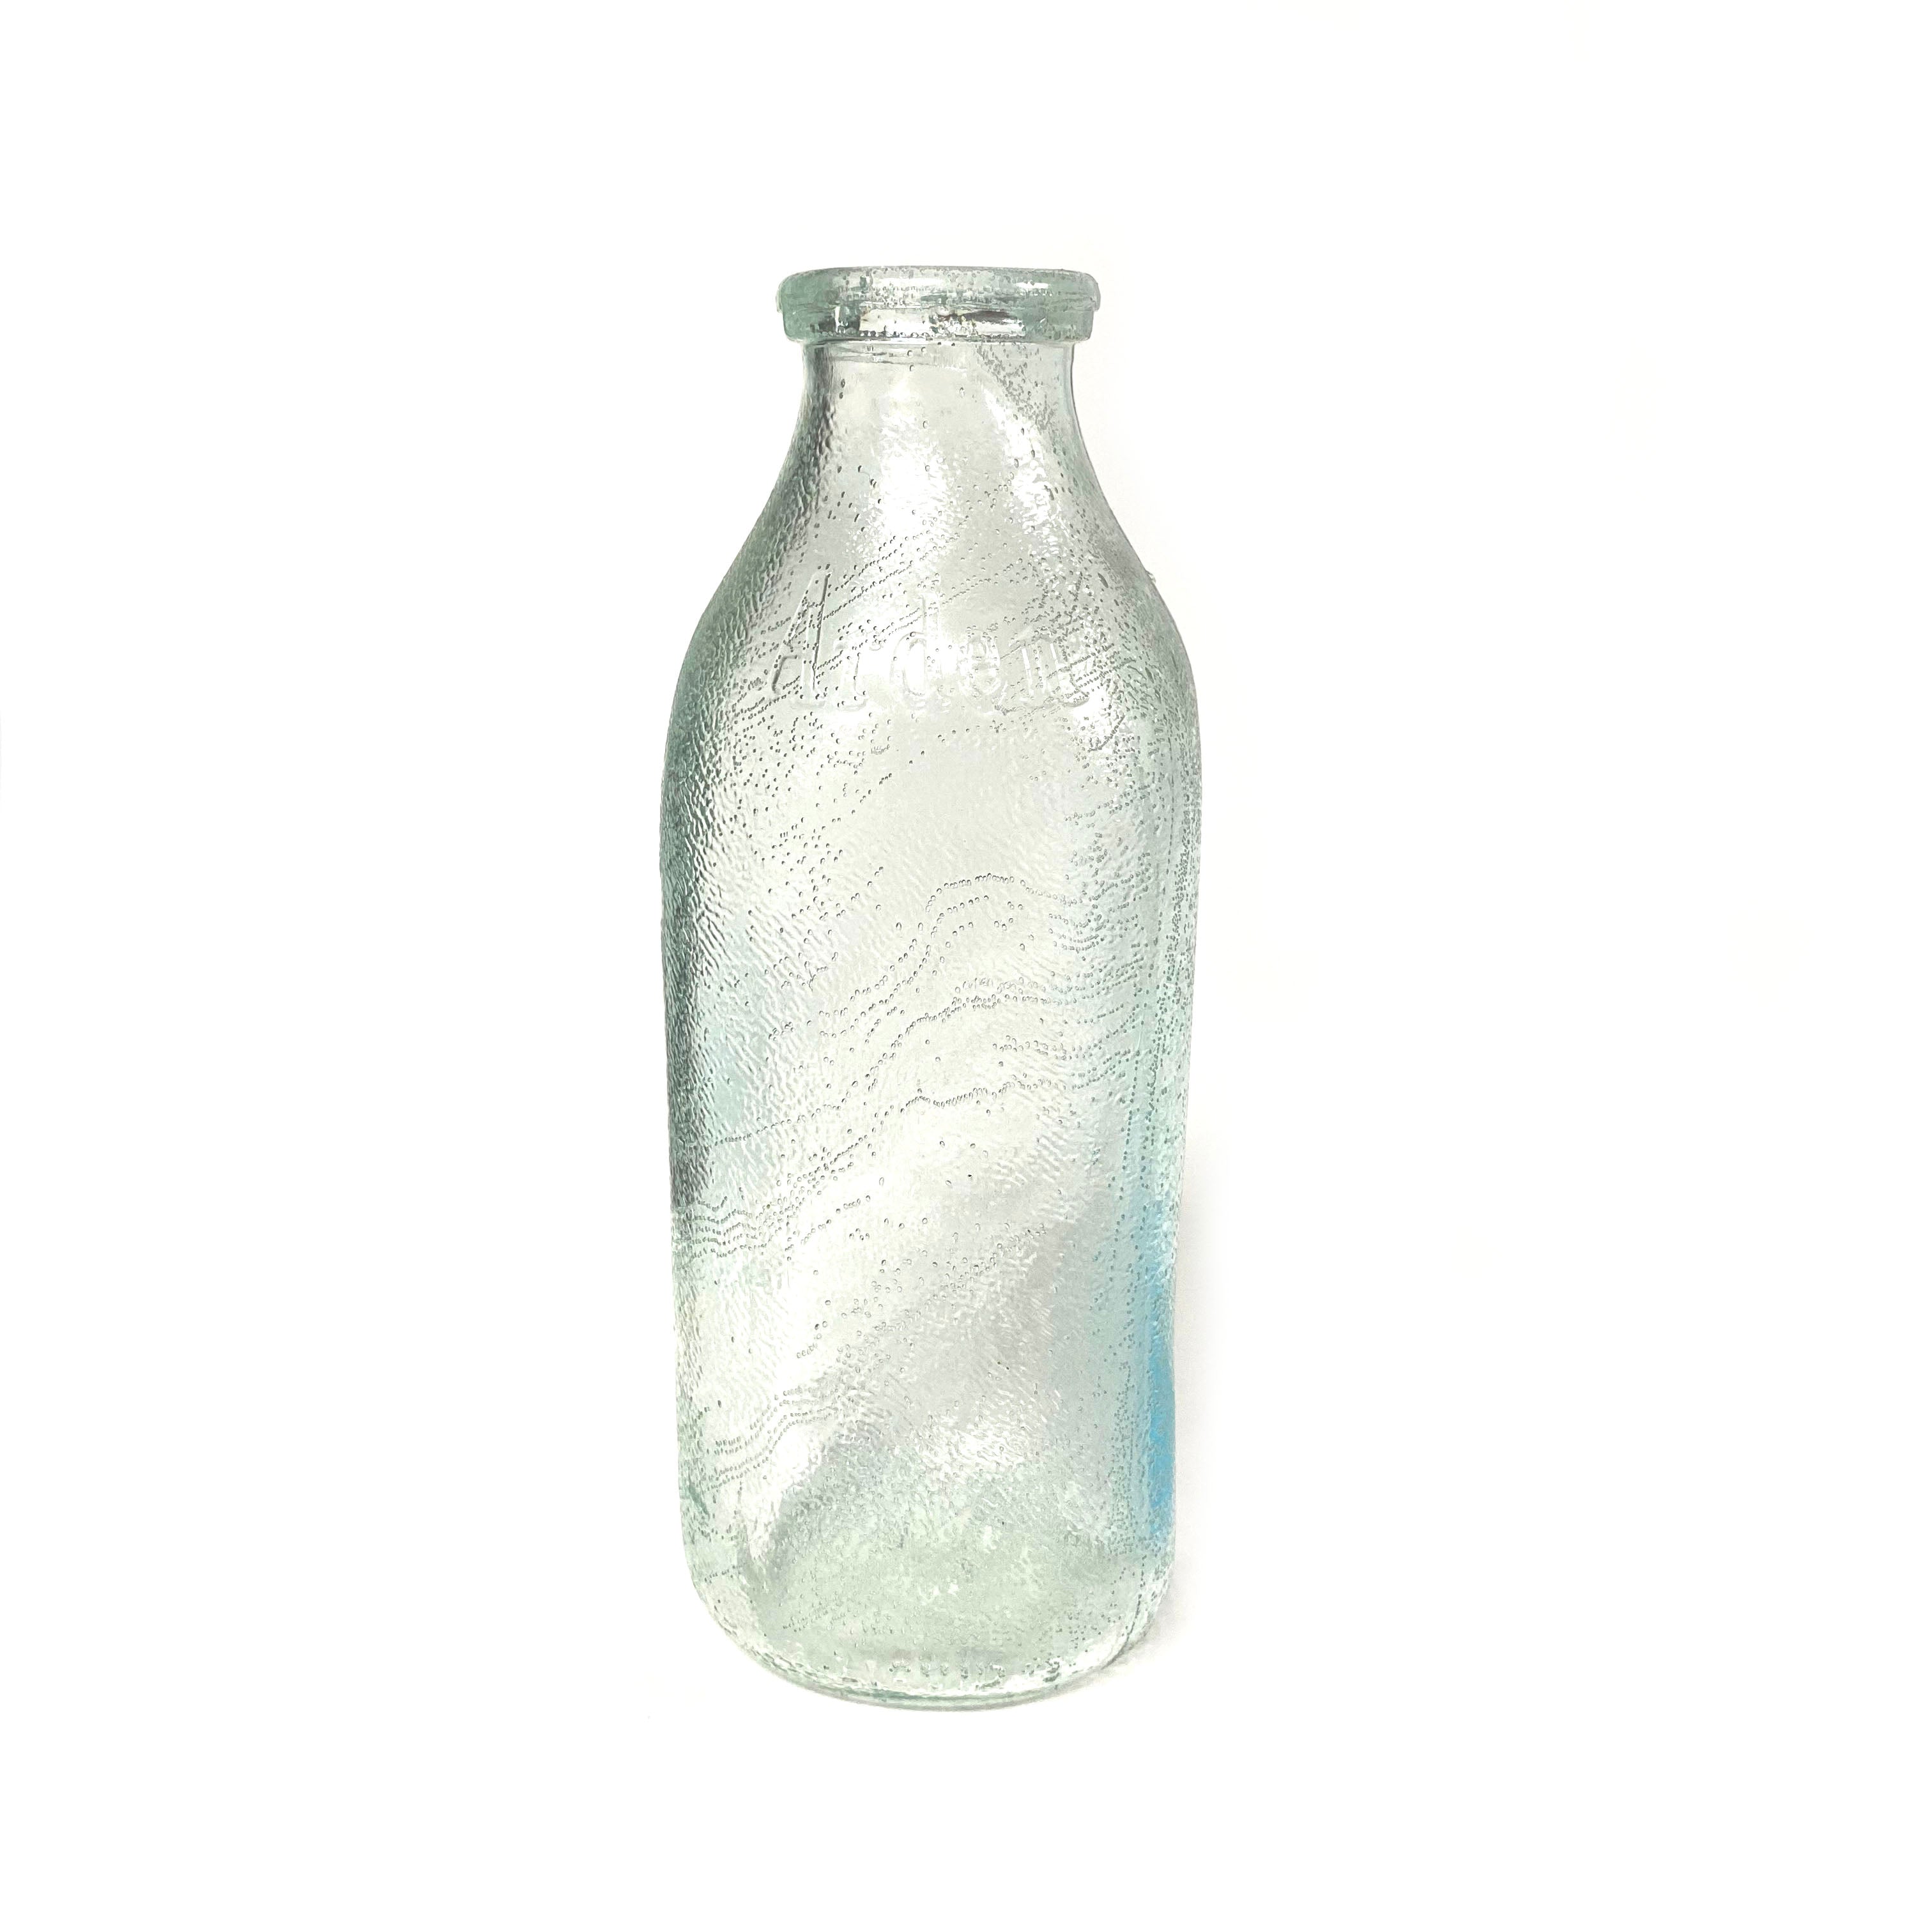 SMASHProps Breakaway Large Milk Bottle Prop - CLEAR - White,Clear